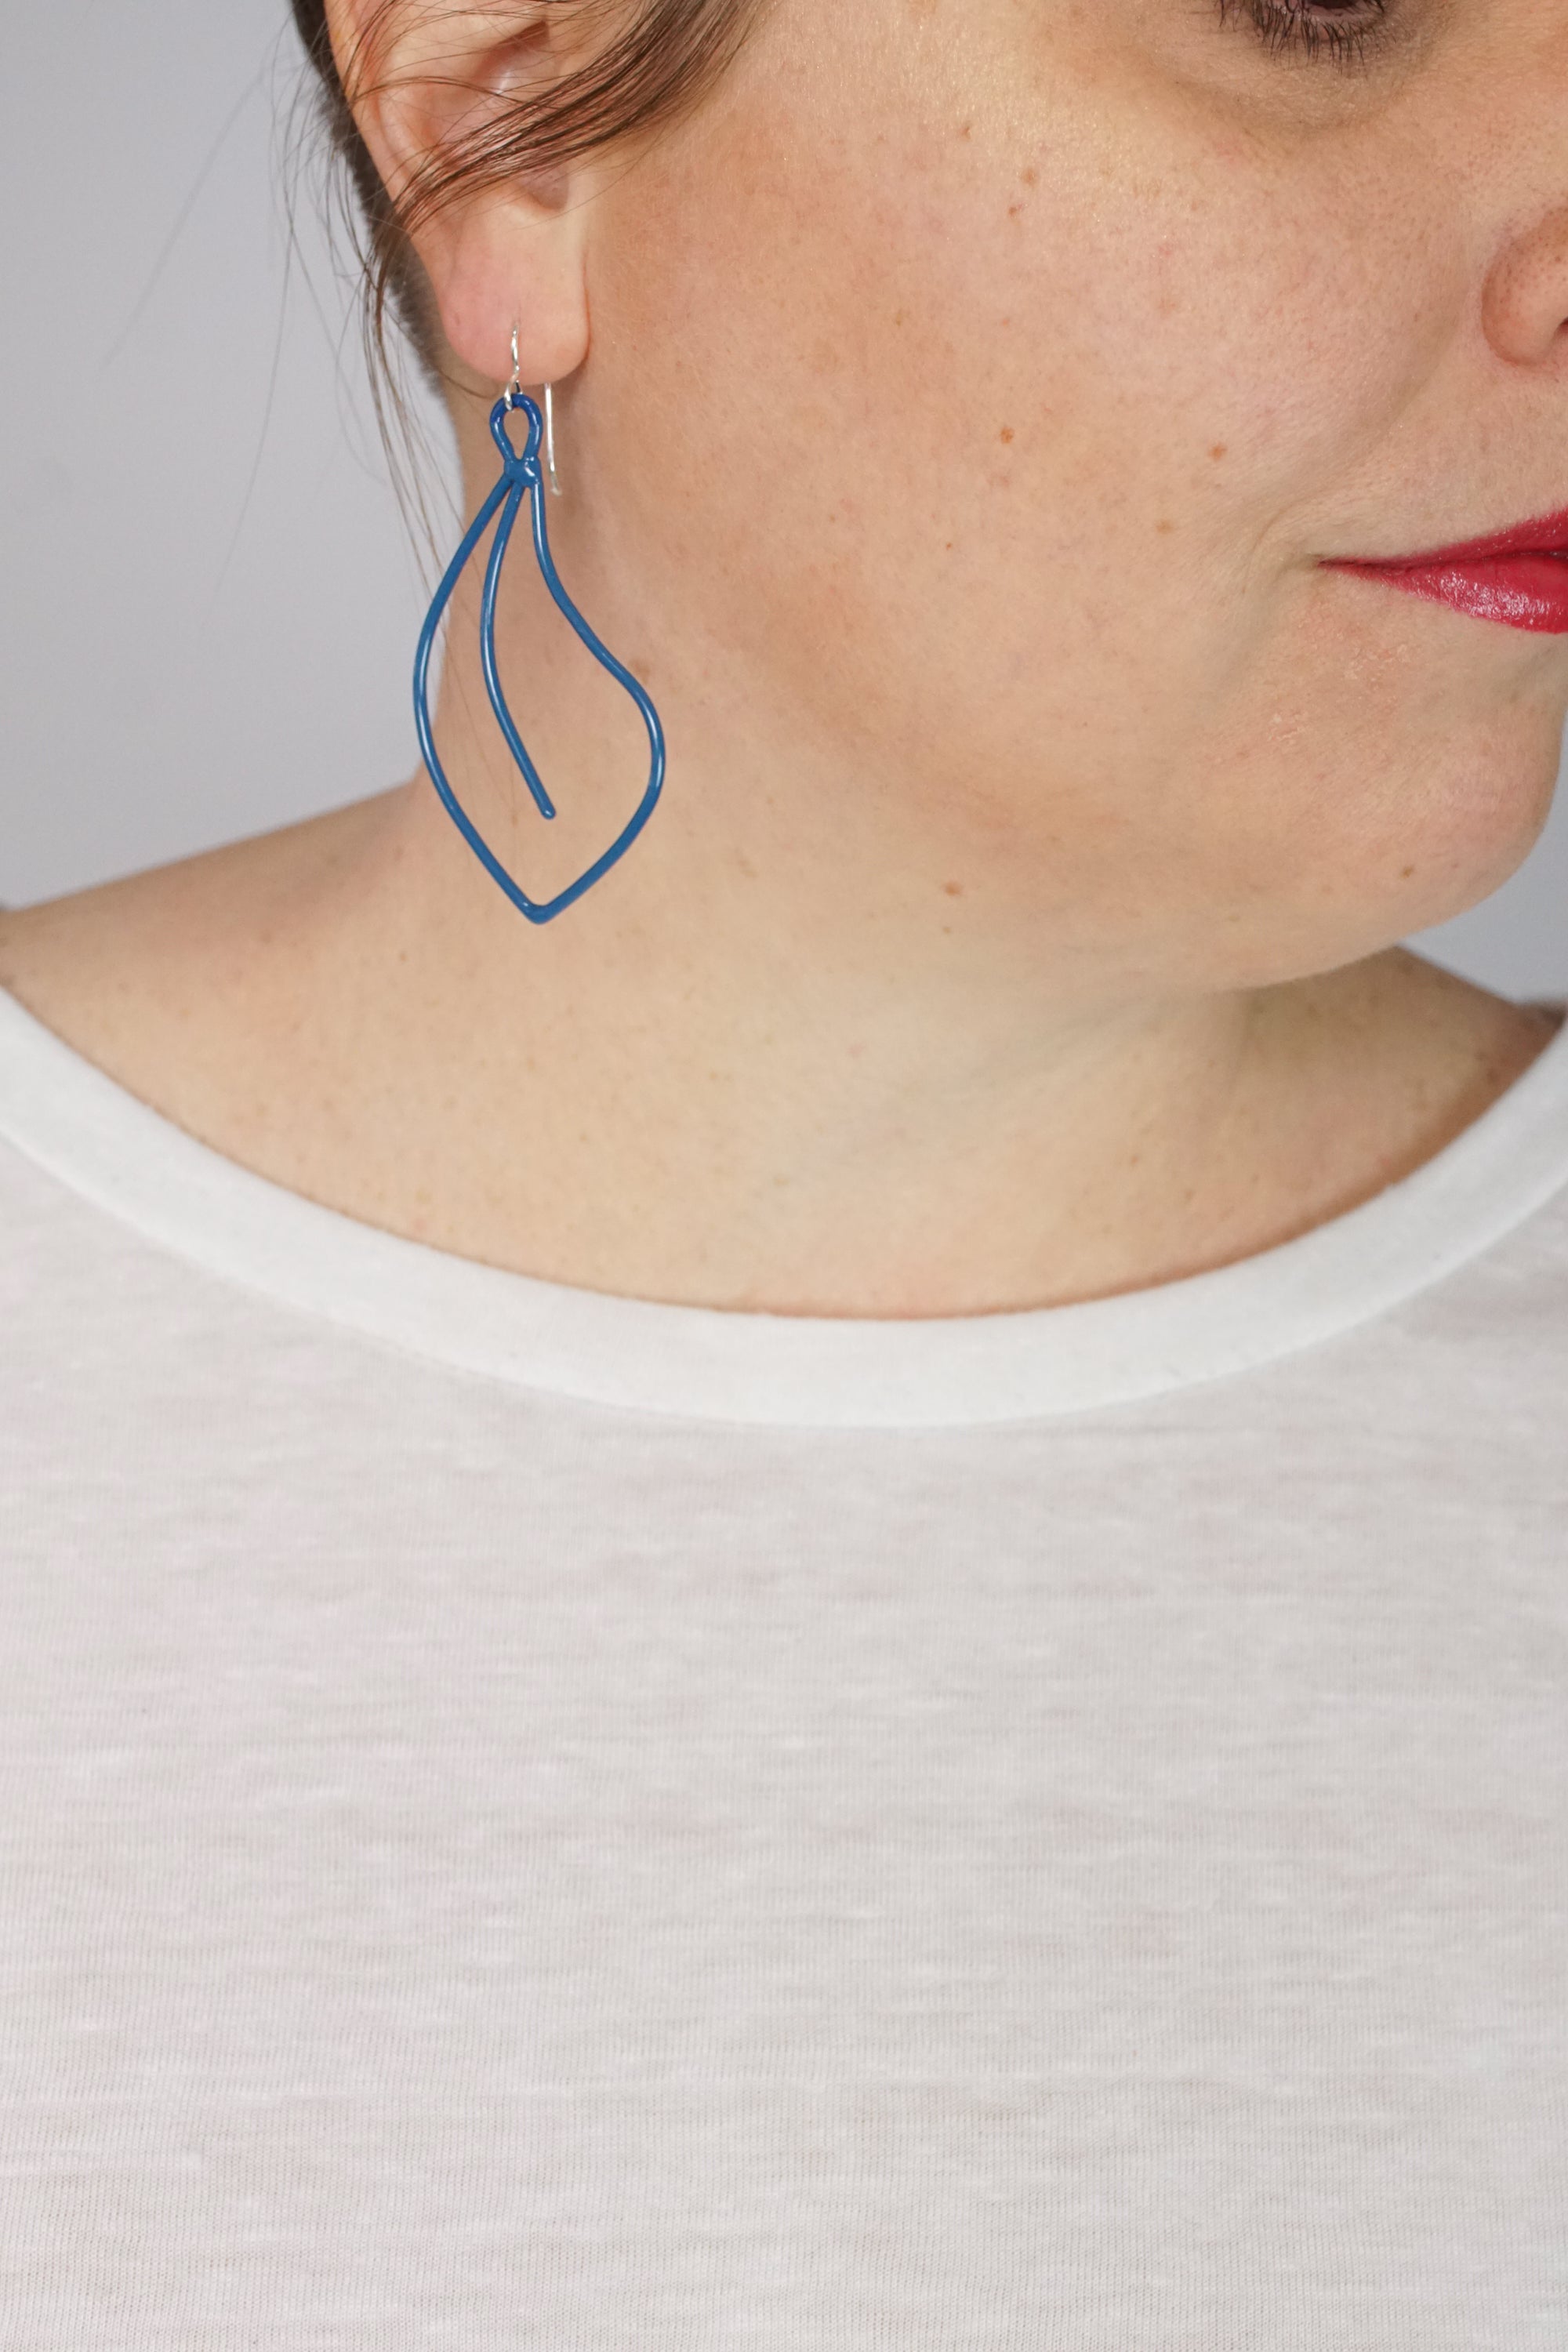 Flourish Earrings in Azure Blue